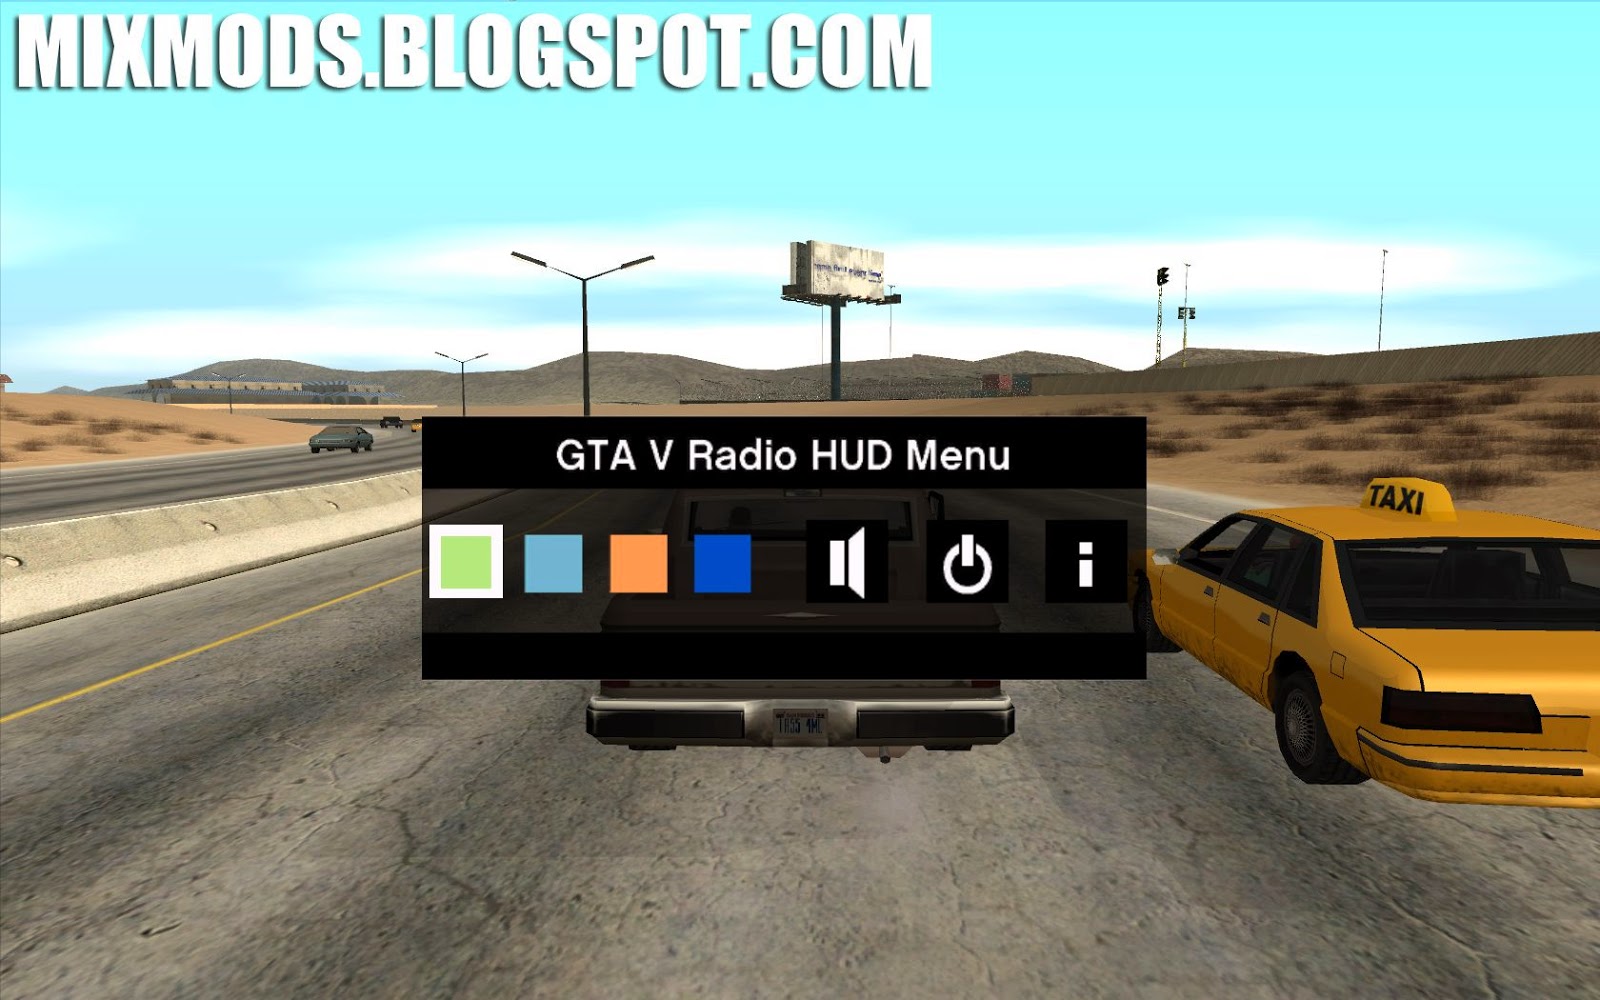 Postagens GTA San Andreas - Página 229 de 519 - MixMods